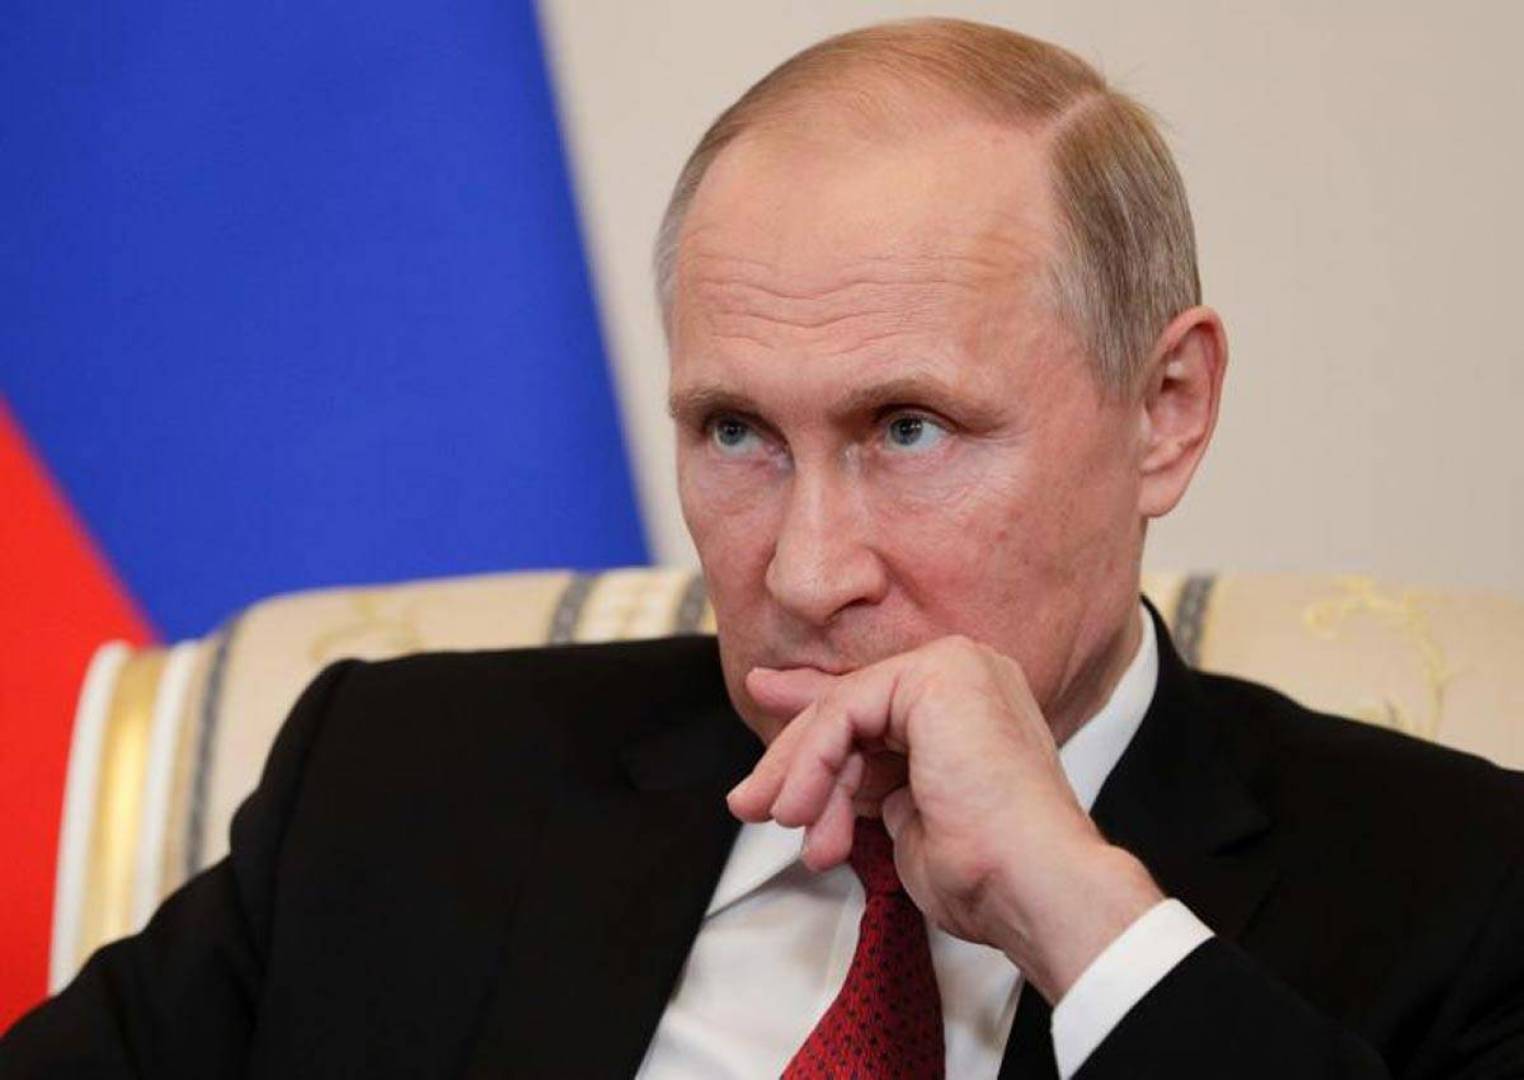 بوتين: بسبب موقف كييف جميع محاولات التوصل إلى تسوية سلمية باءت بالفشل